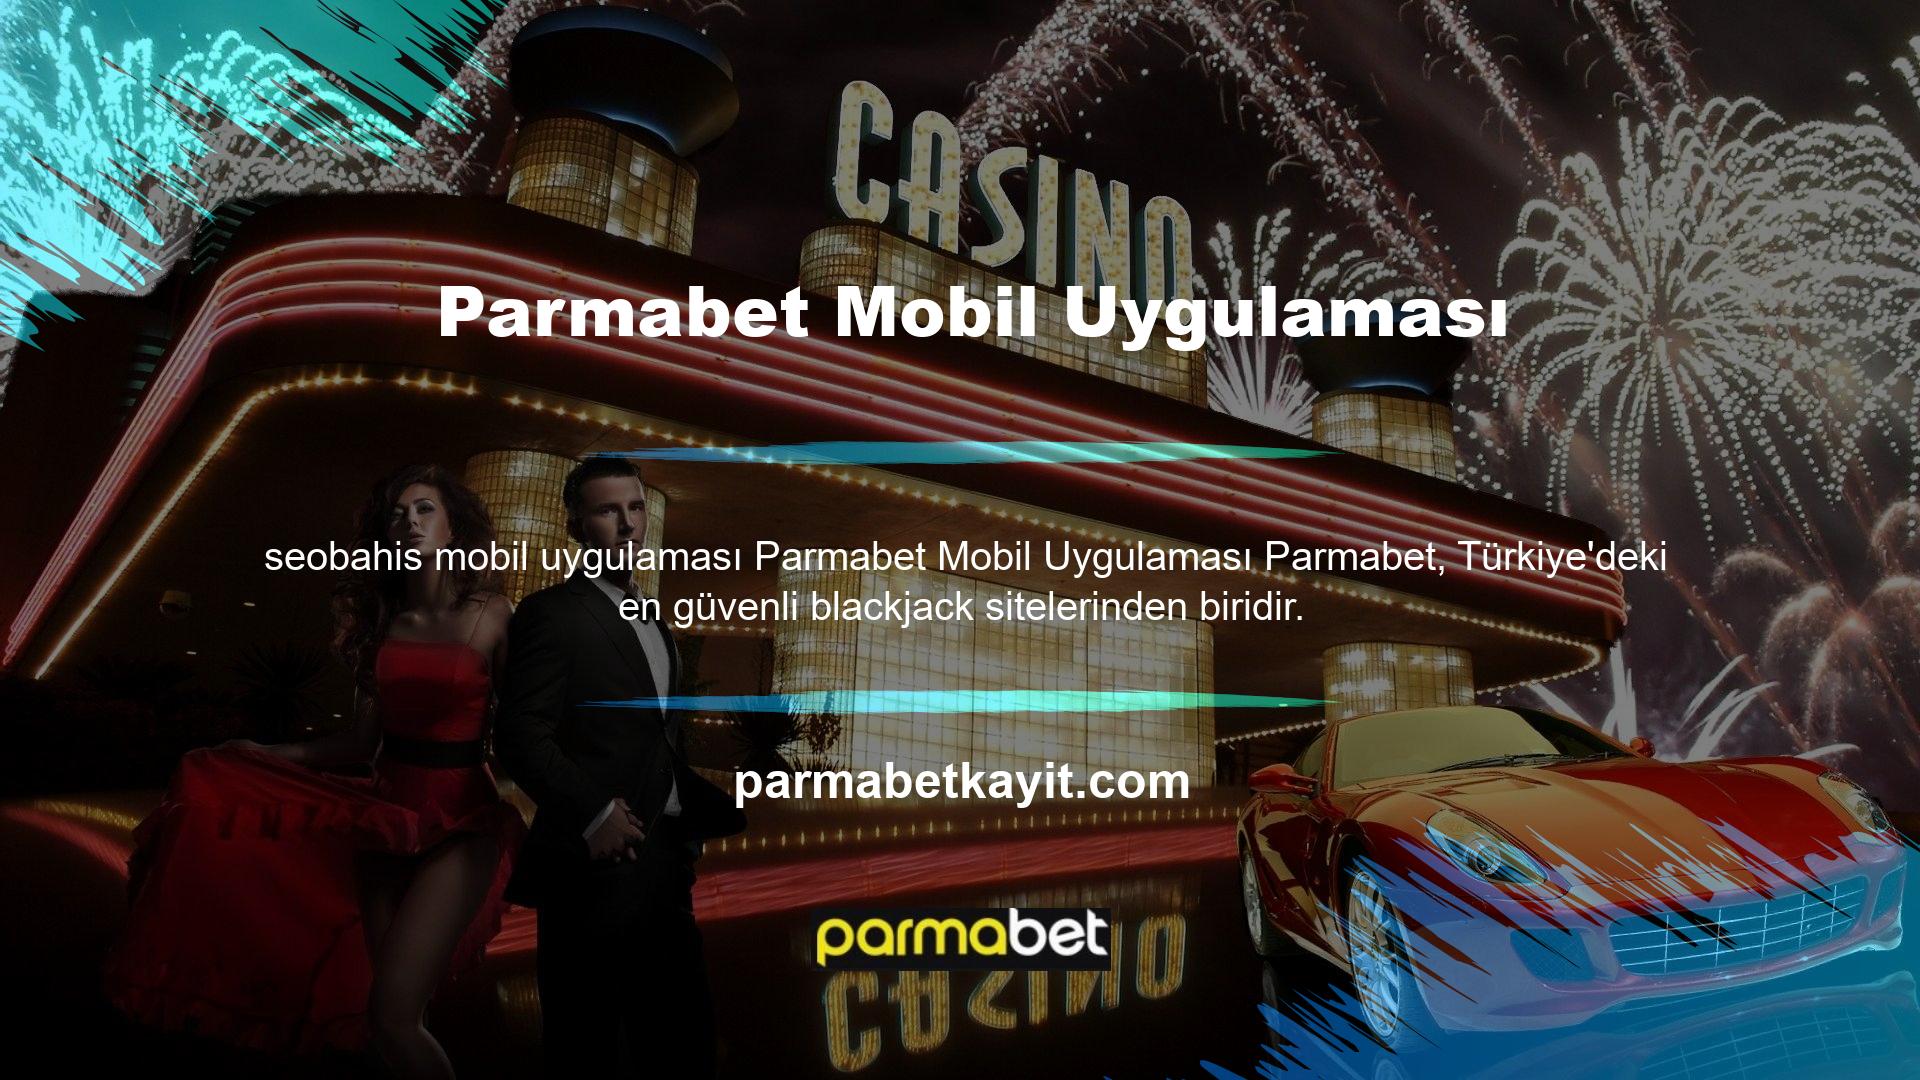 Parmabet, poker oyununa ilgi duyan oyuncular için Türkiye'nin en popüler ve çekici sitelerinden biridir